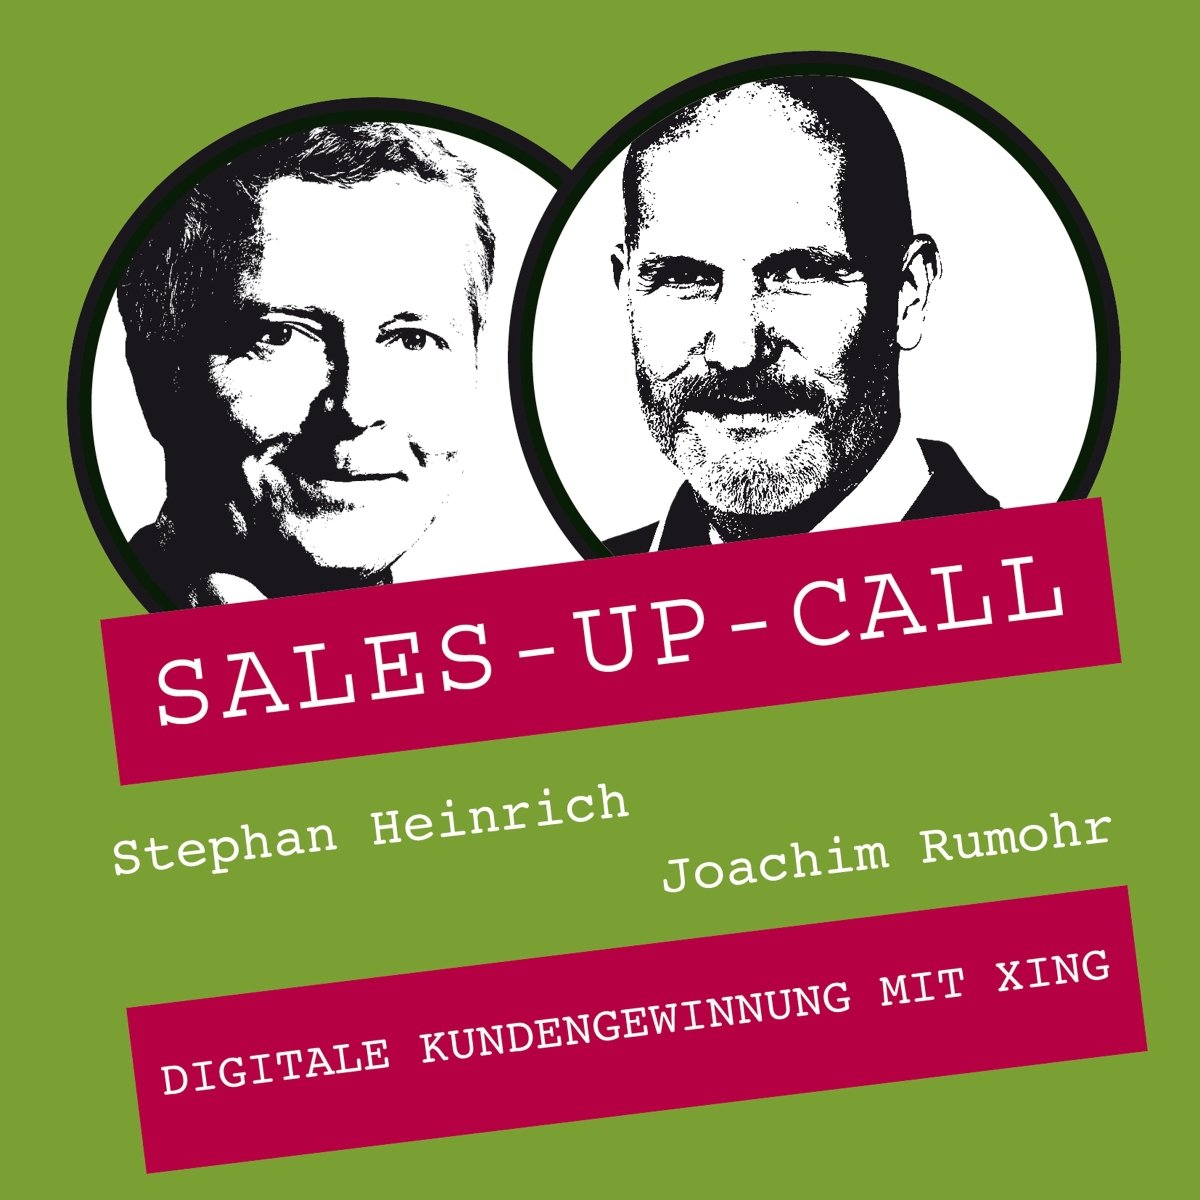 Digitale Kundengewinnung mit XING - Sales-up-Call - Stephan Heinrich